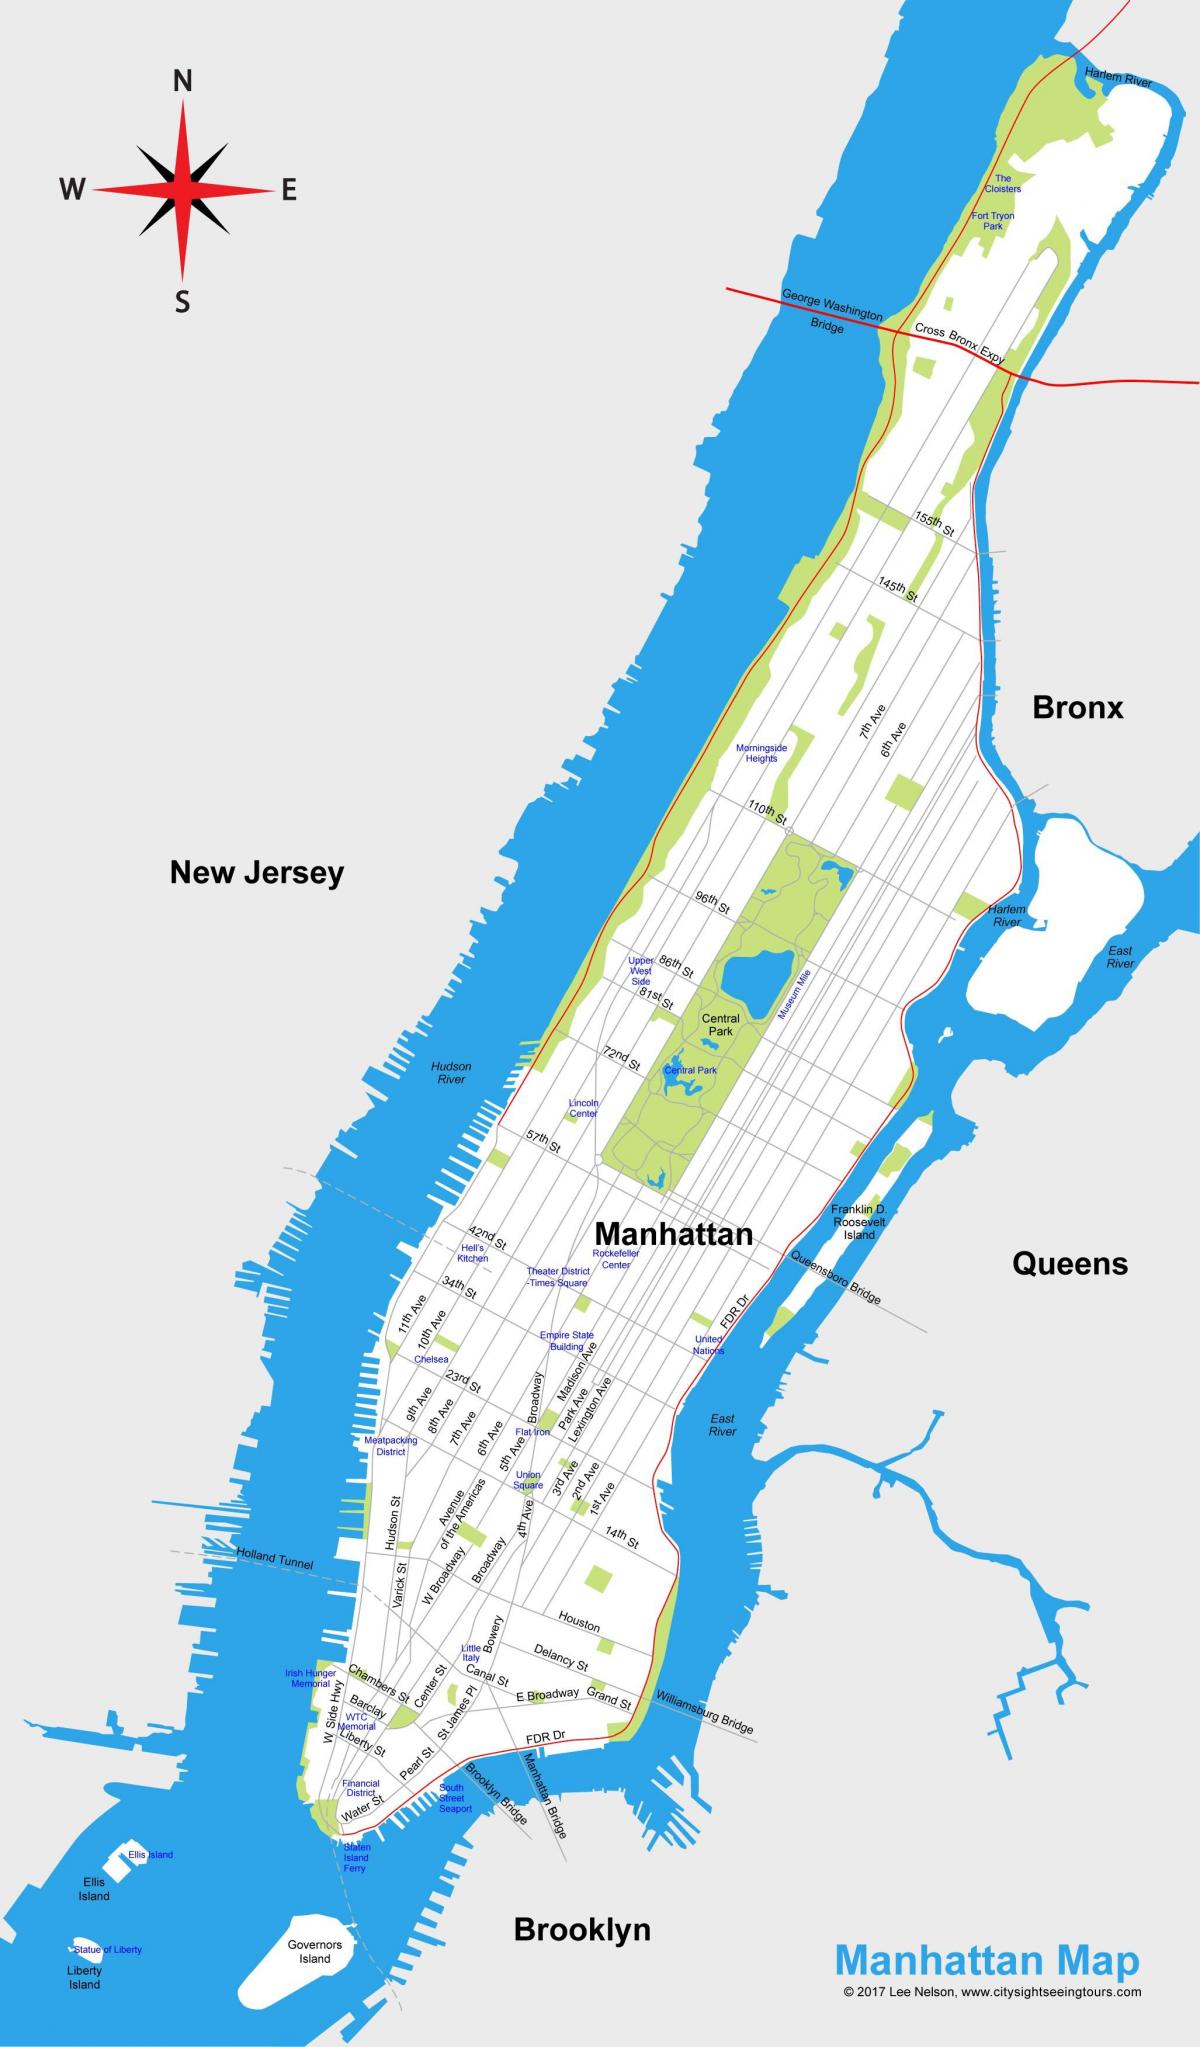 Manhattan afdrukbare plattegrond van de stad